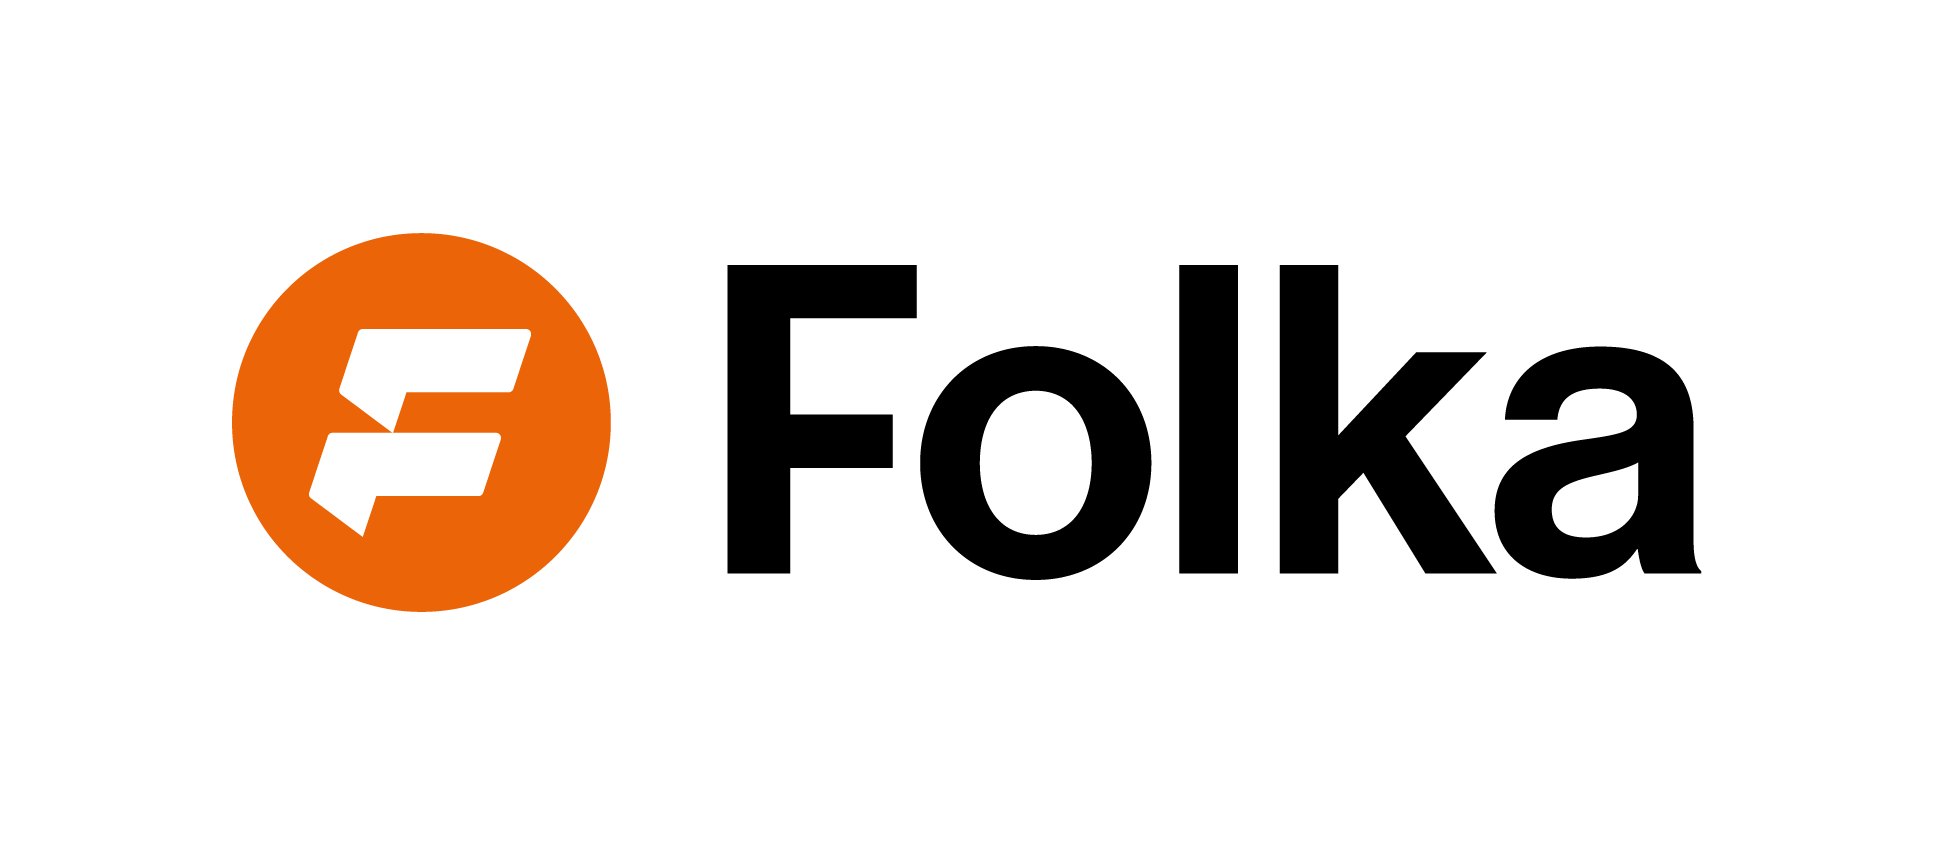 Folka logo